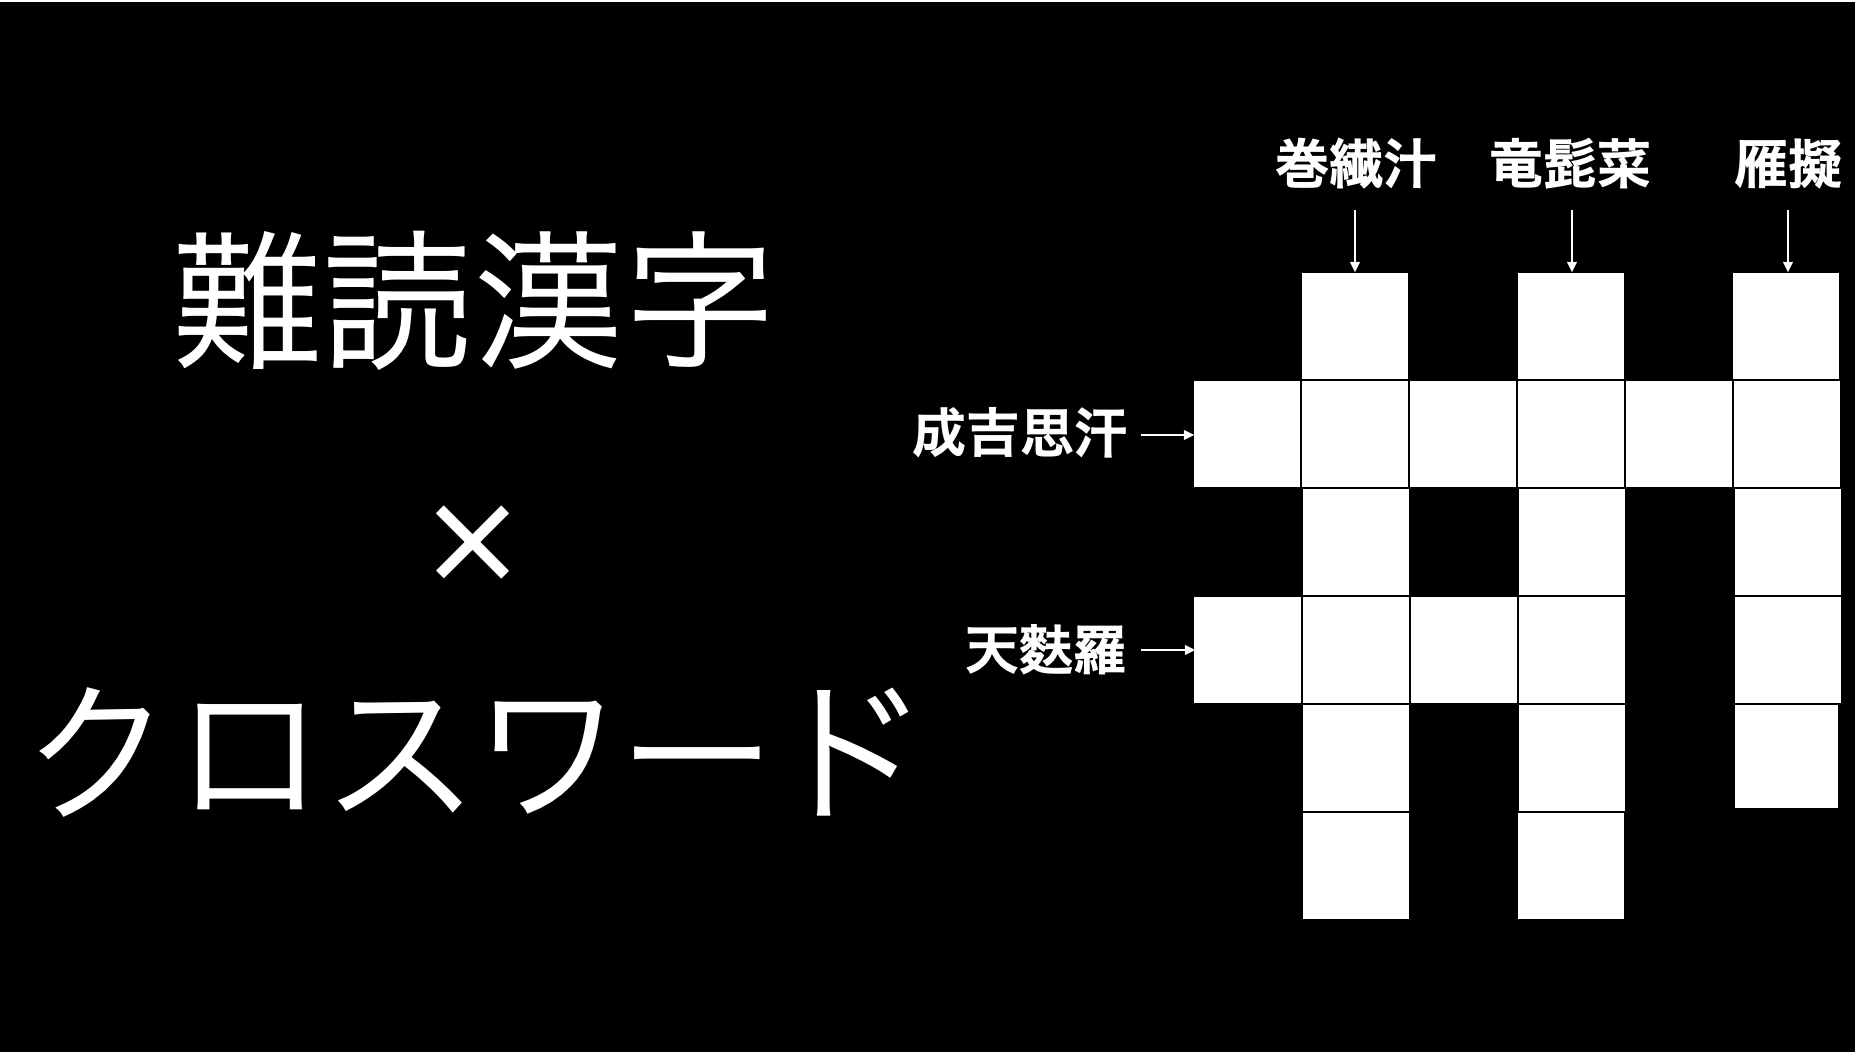 食べ物編 難読漢字でクロスワードパズル Raise